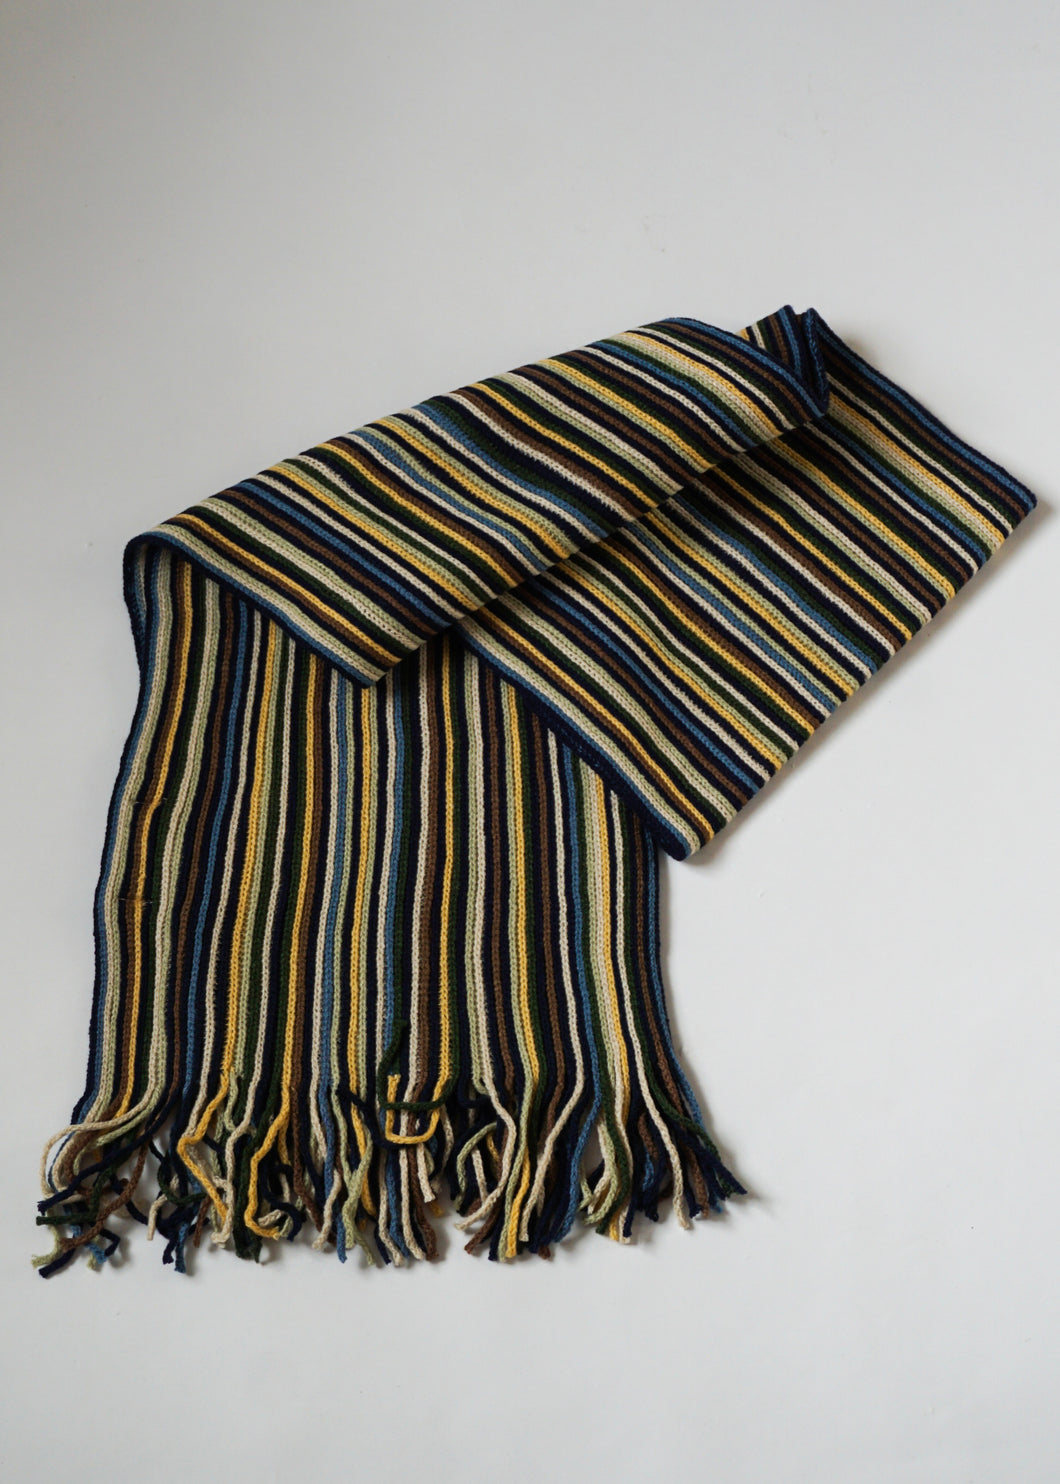 Rib knit scarf in multi colour.